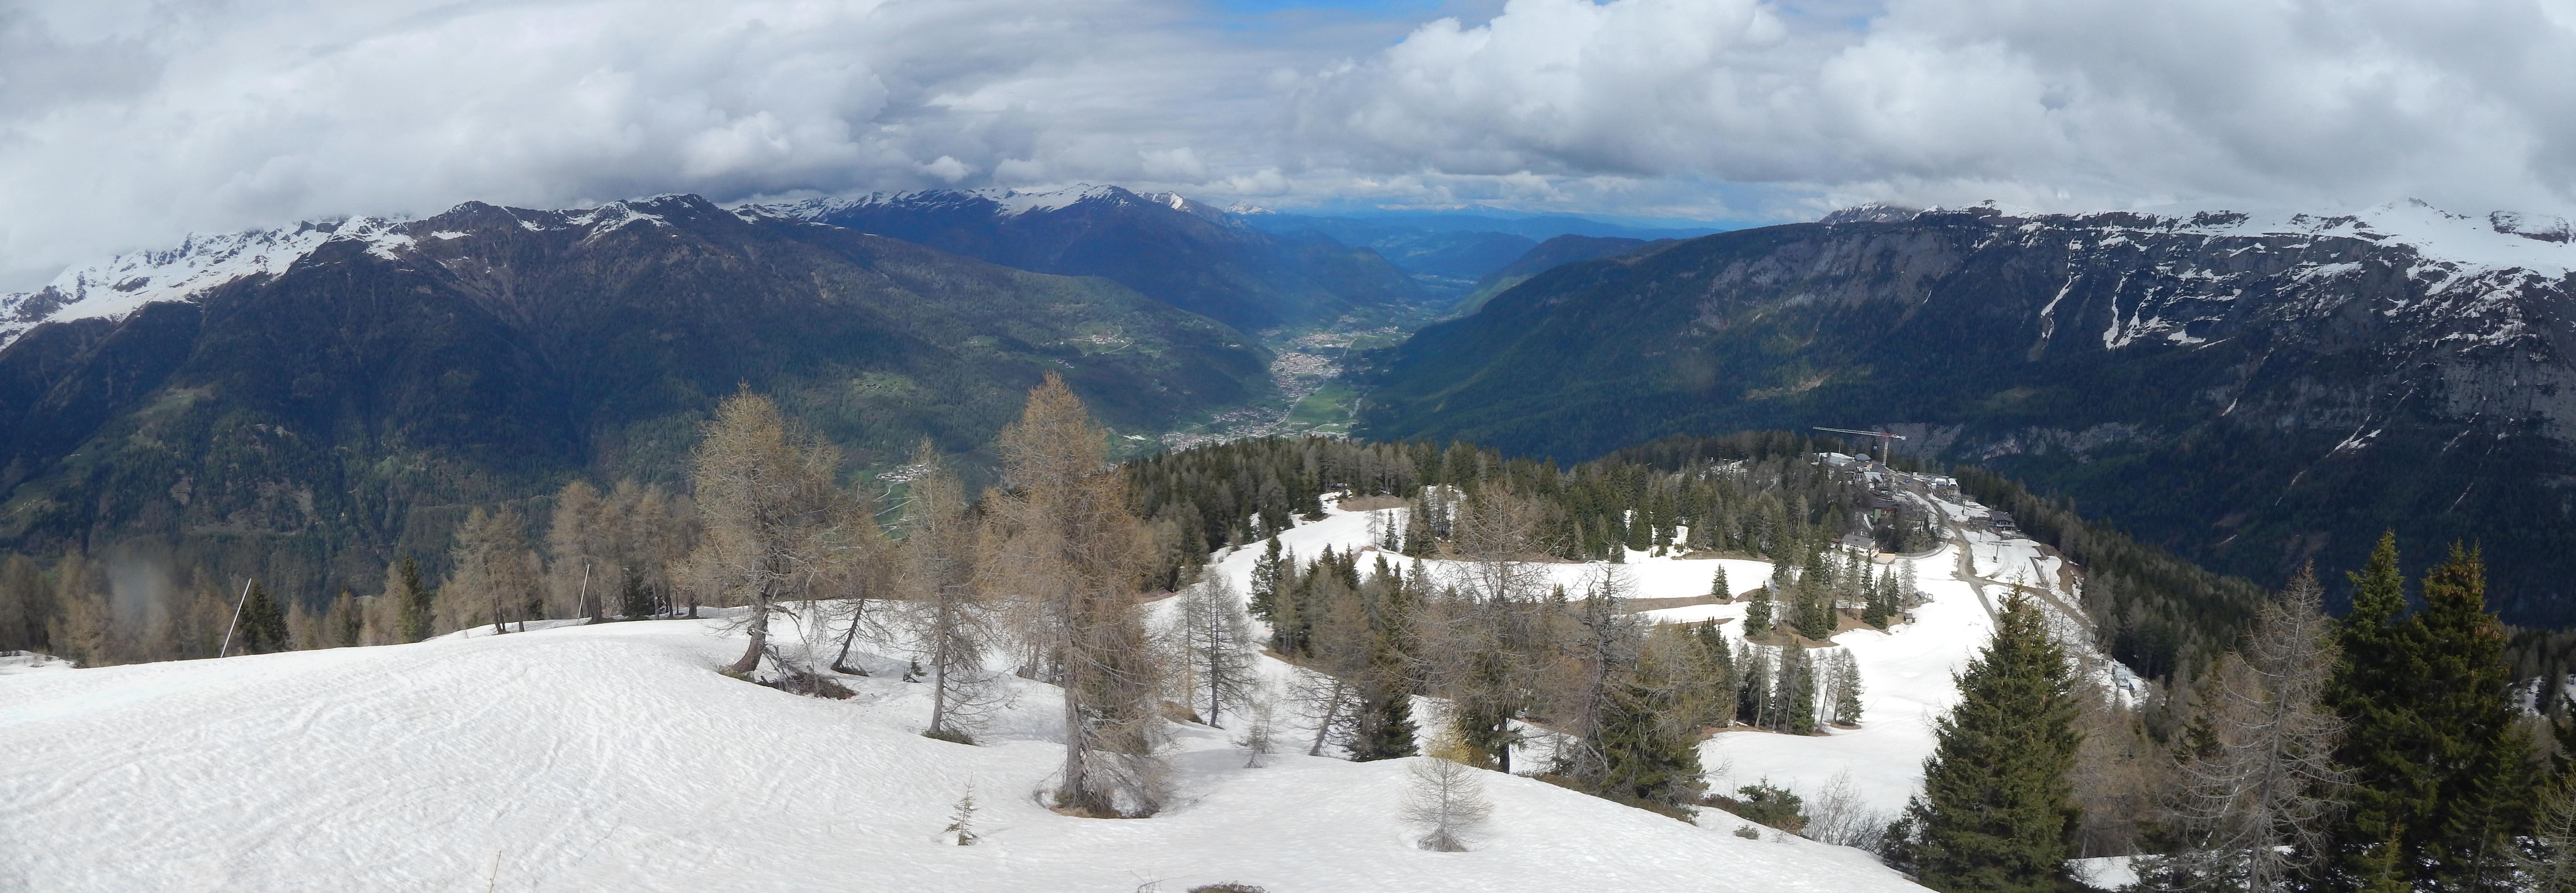 Campiglio Dolomiti di Brenta - Folgarida - Monte Spolverino